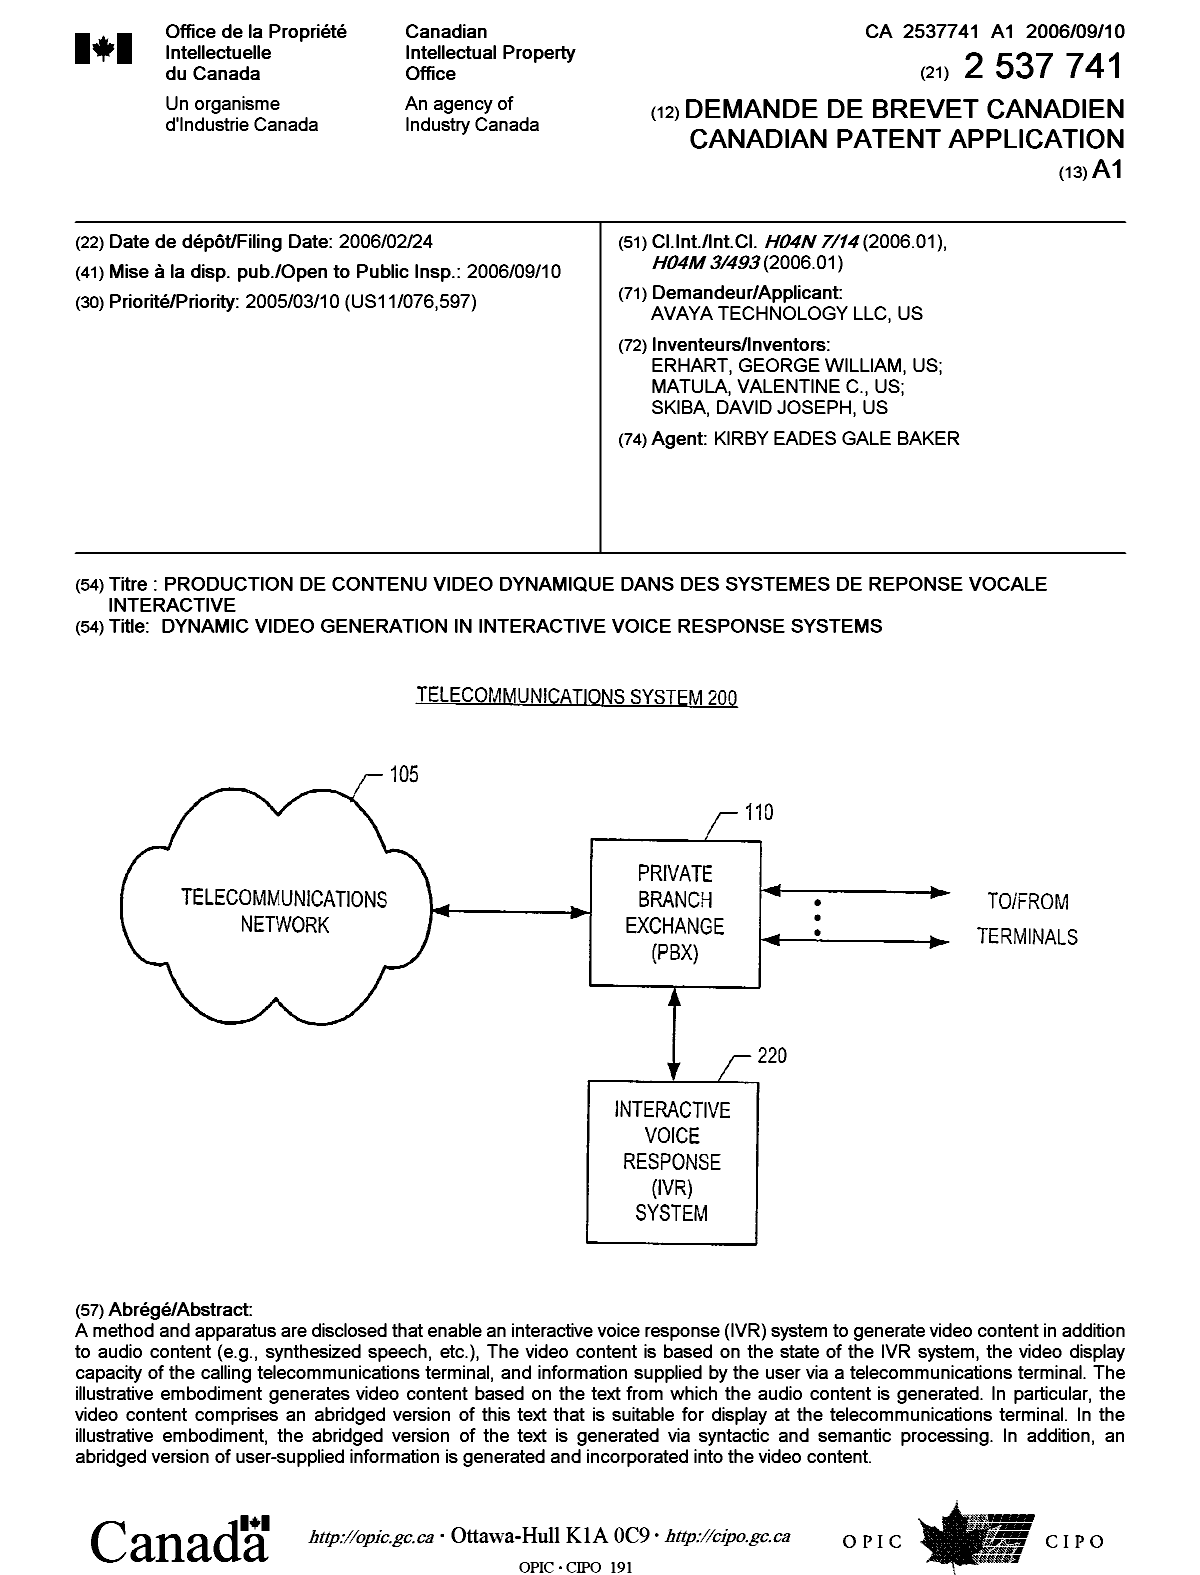 Document de brevet canadien 2537741. Page couverture 20060822. Image 1 de 1